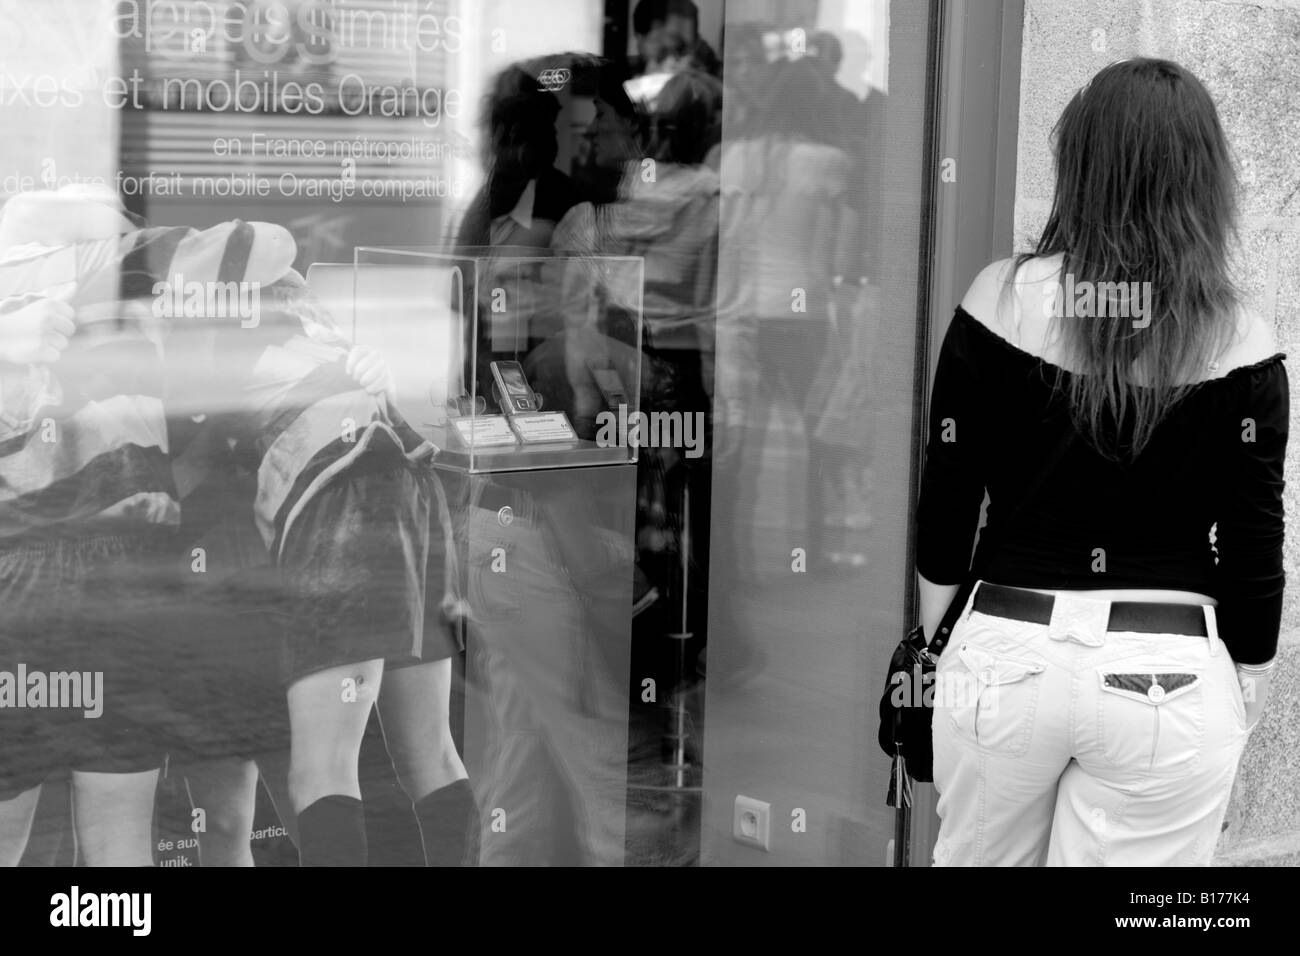 Jeune femme admirant life size photo de joueurs de rugby de vitrine mobile français Banque D'Images